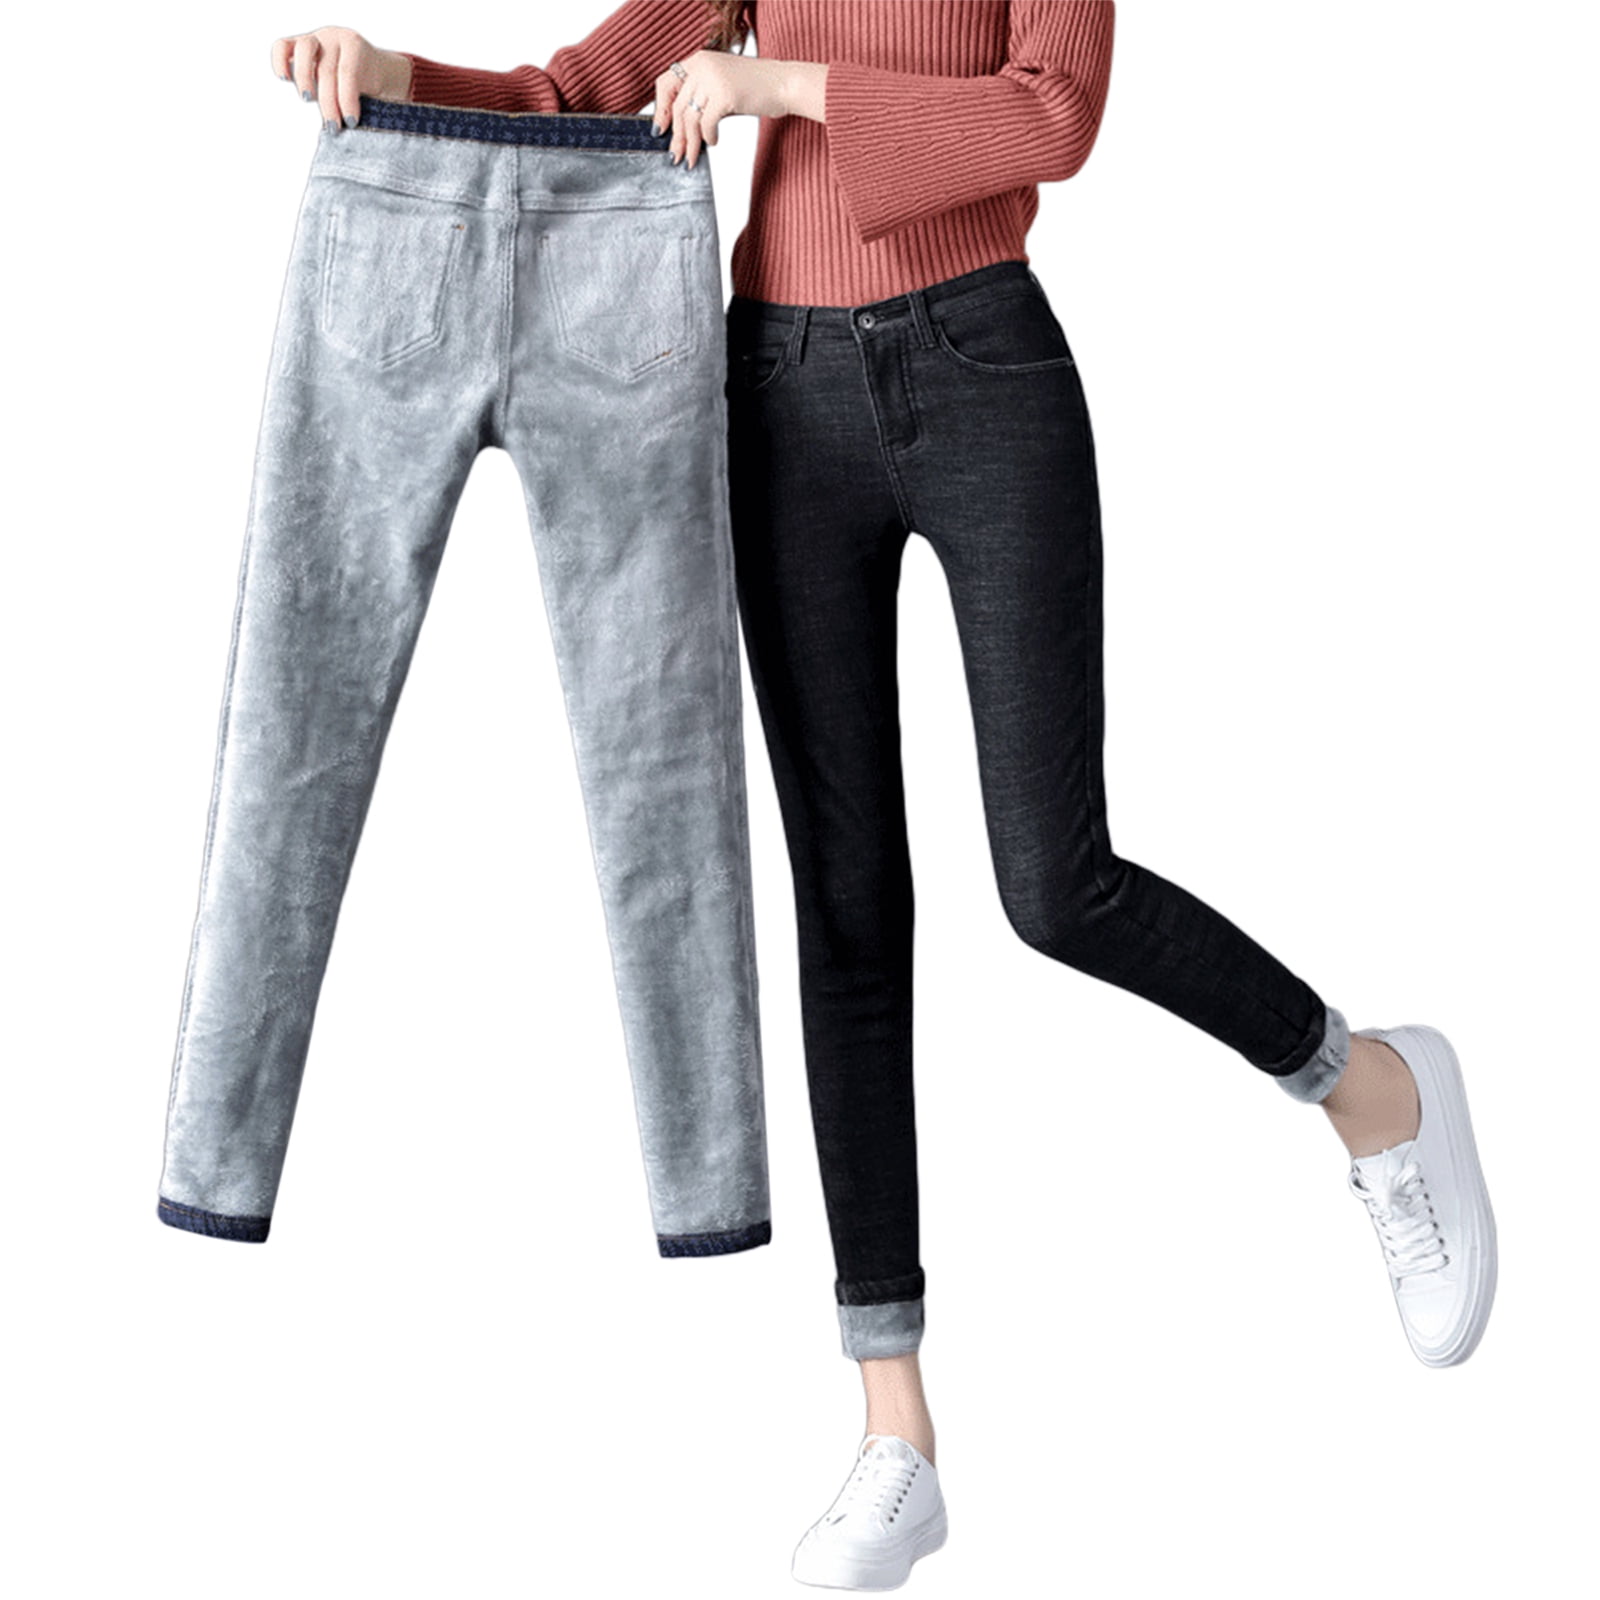 Camii Mia Fleece Lined Jeans for Women Winter Jeans Warm Pants